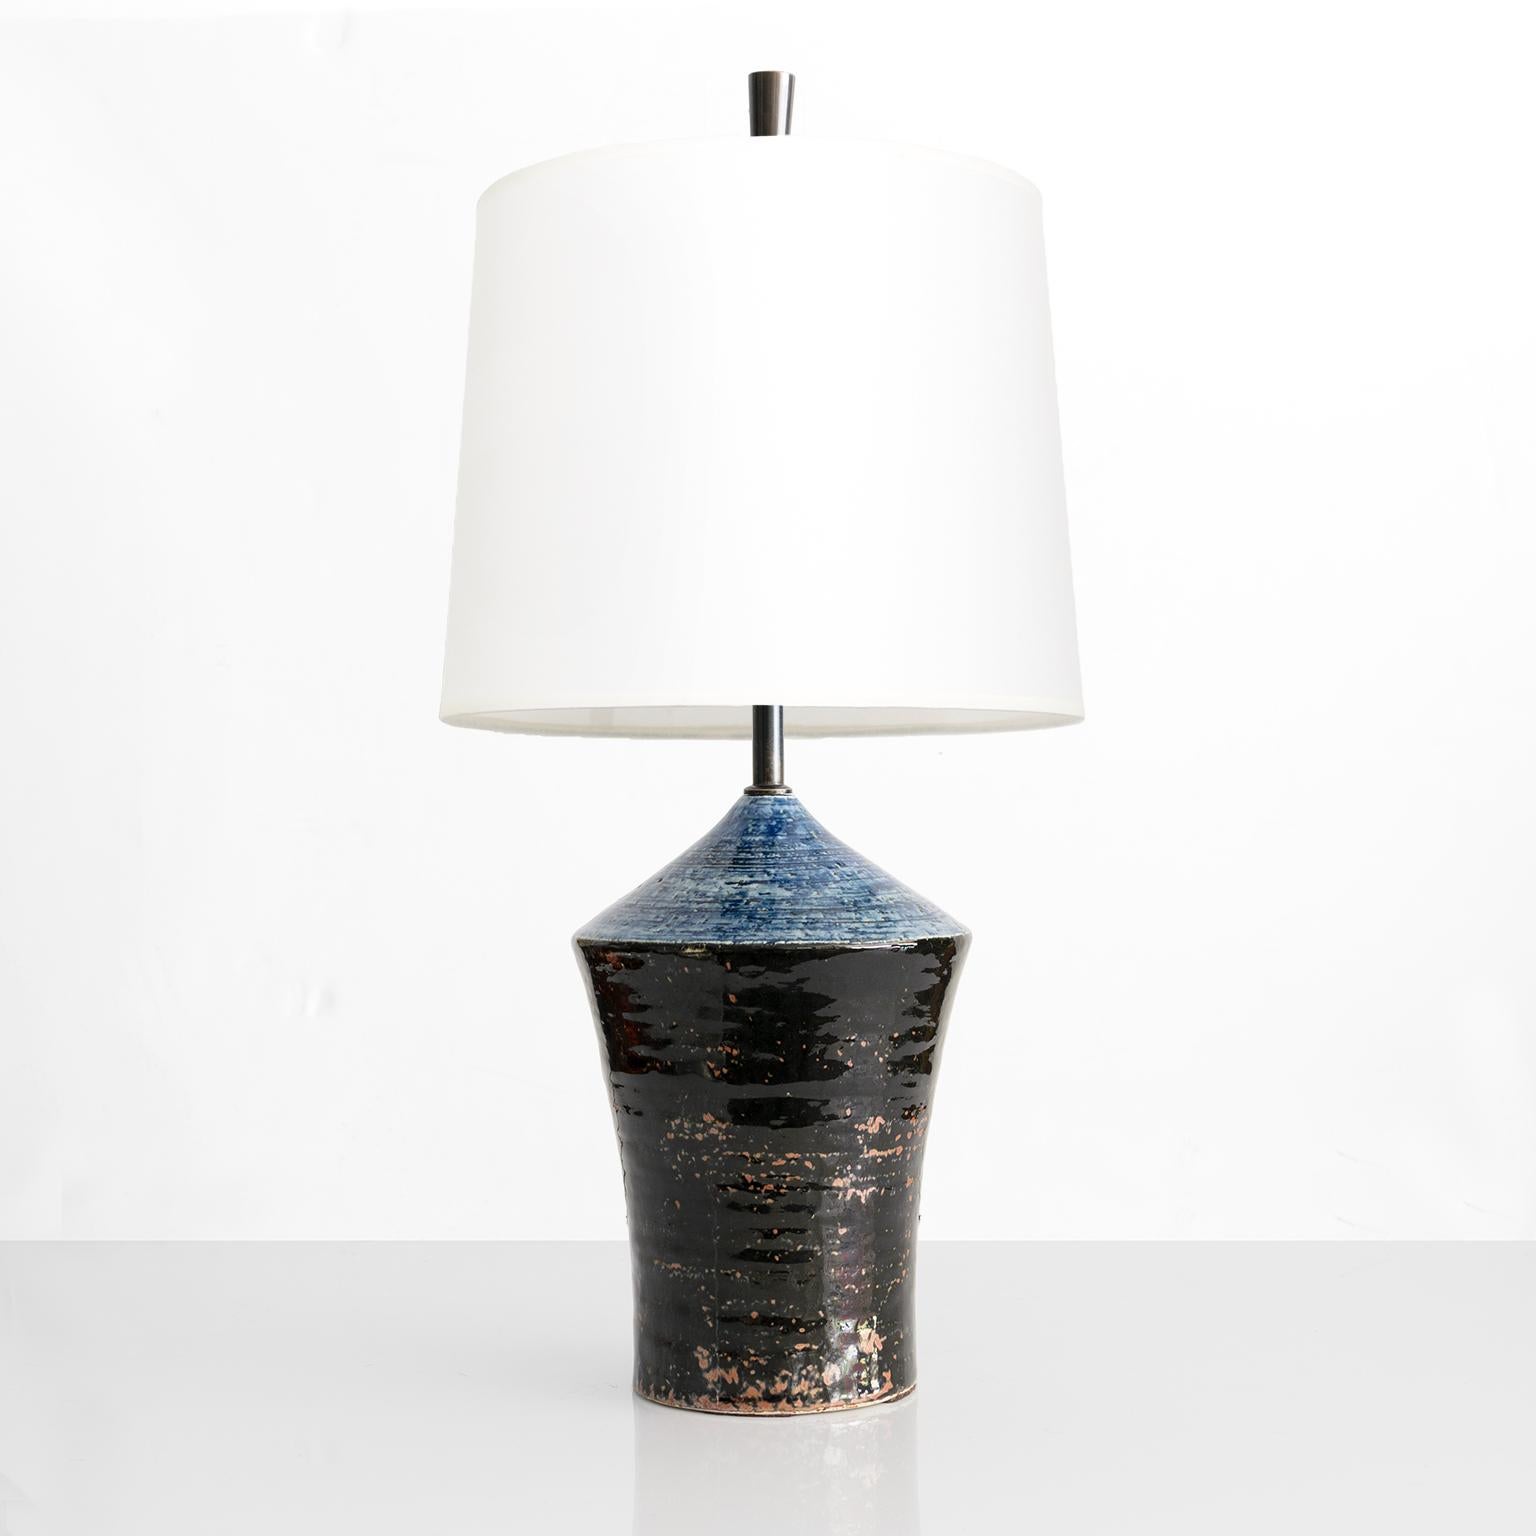 Sylvia Leuchovious est une lampe en céramique unique en terre chamottée jetée à la main, avec des glaçures bleues, rouges et noires.  Fabriqué au Studio Rorstrand, Suède, années 1960

Hauteur totale : 20